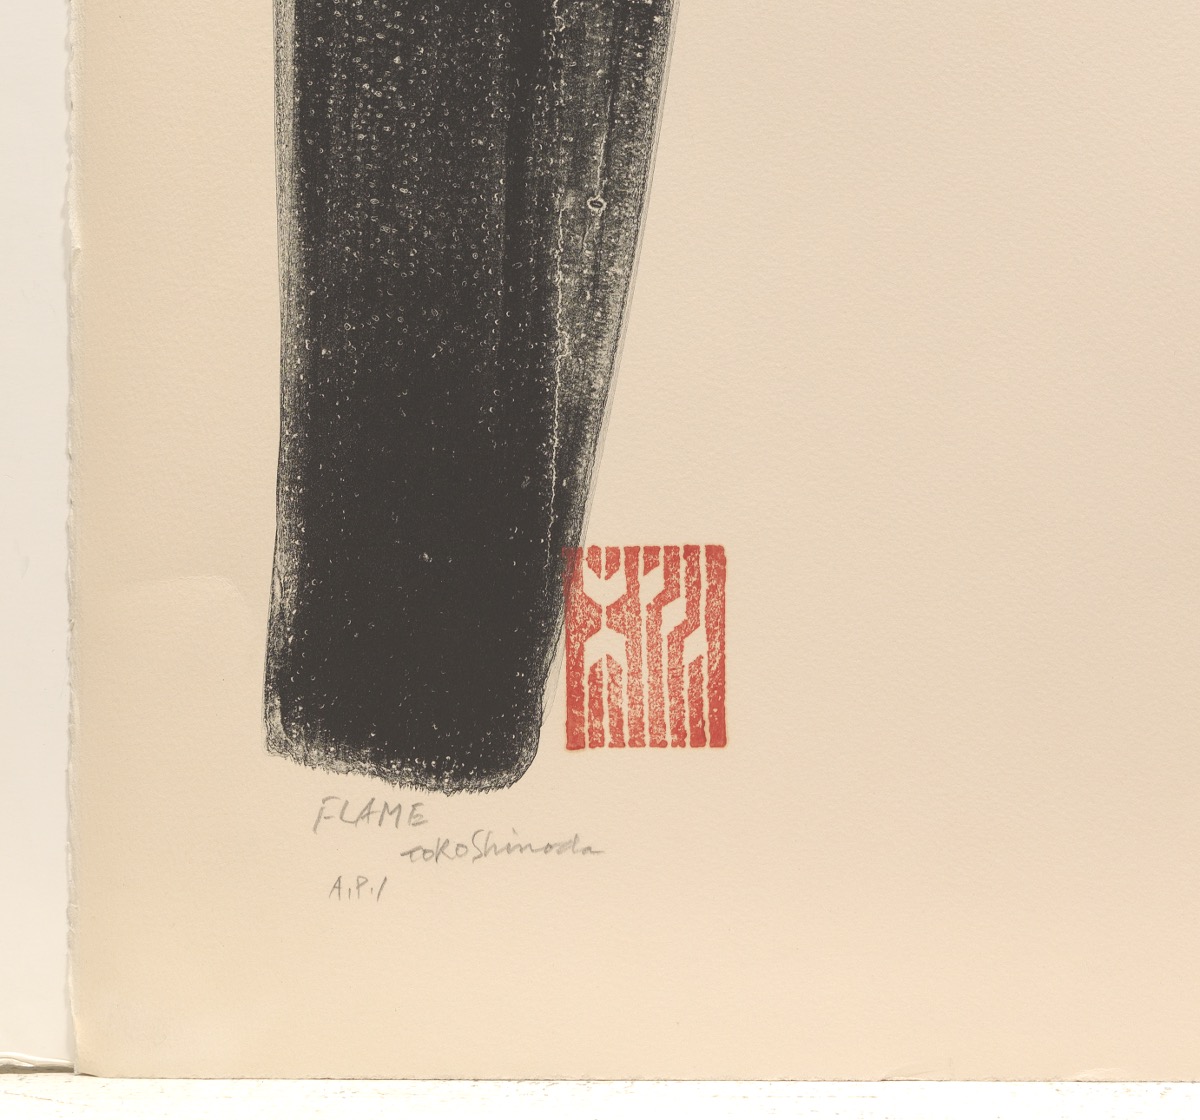 Toko Shinoda (Japanese, b. 1913) - Image 3 of 4